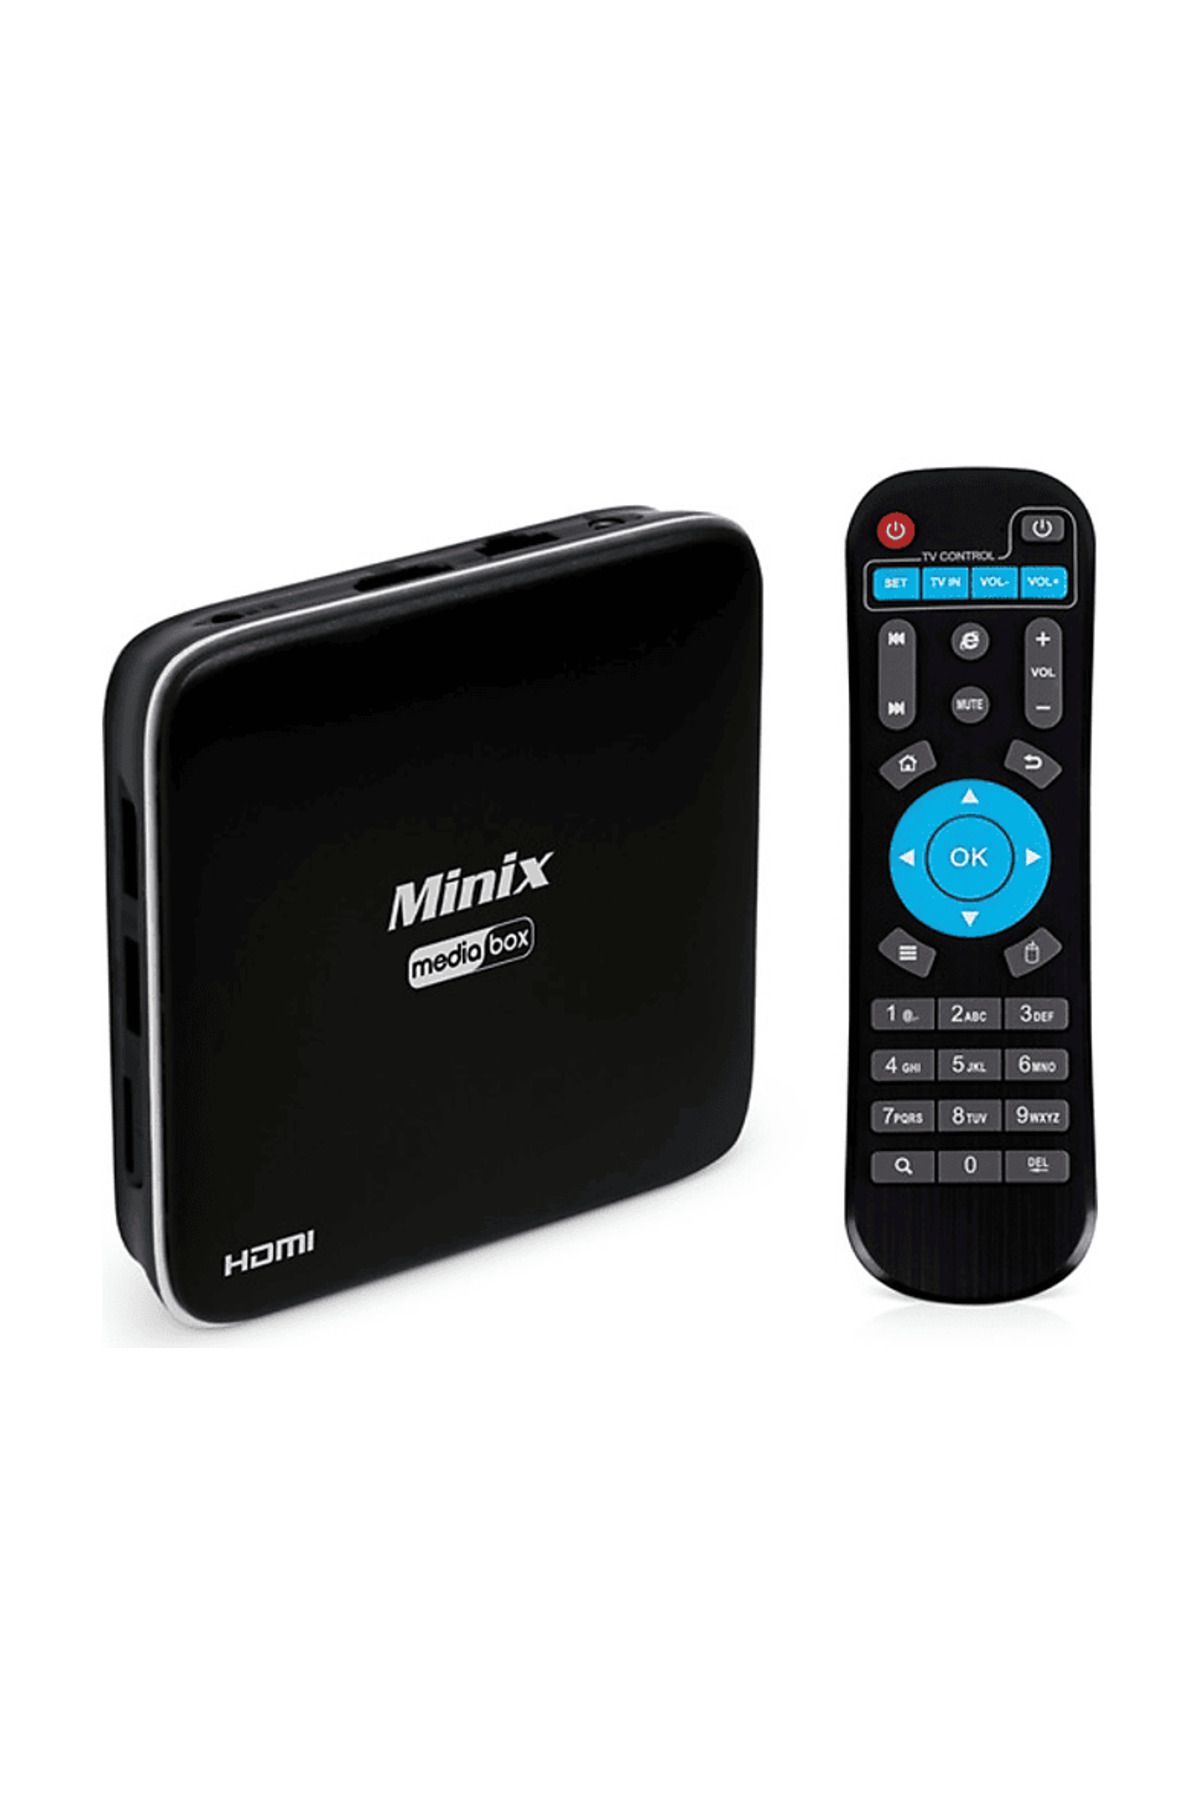 Next Minix Media Android TV Box